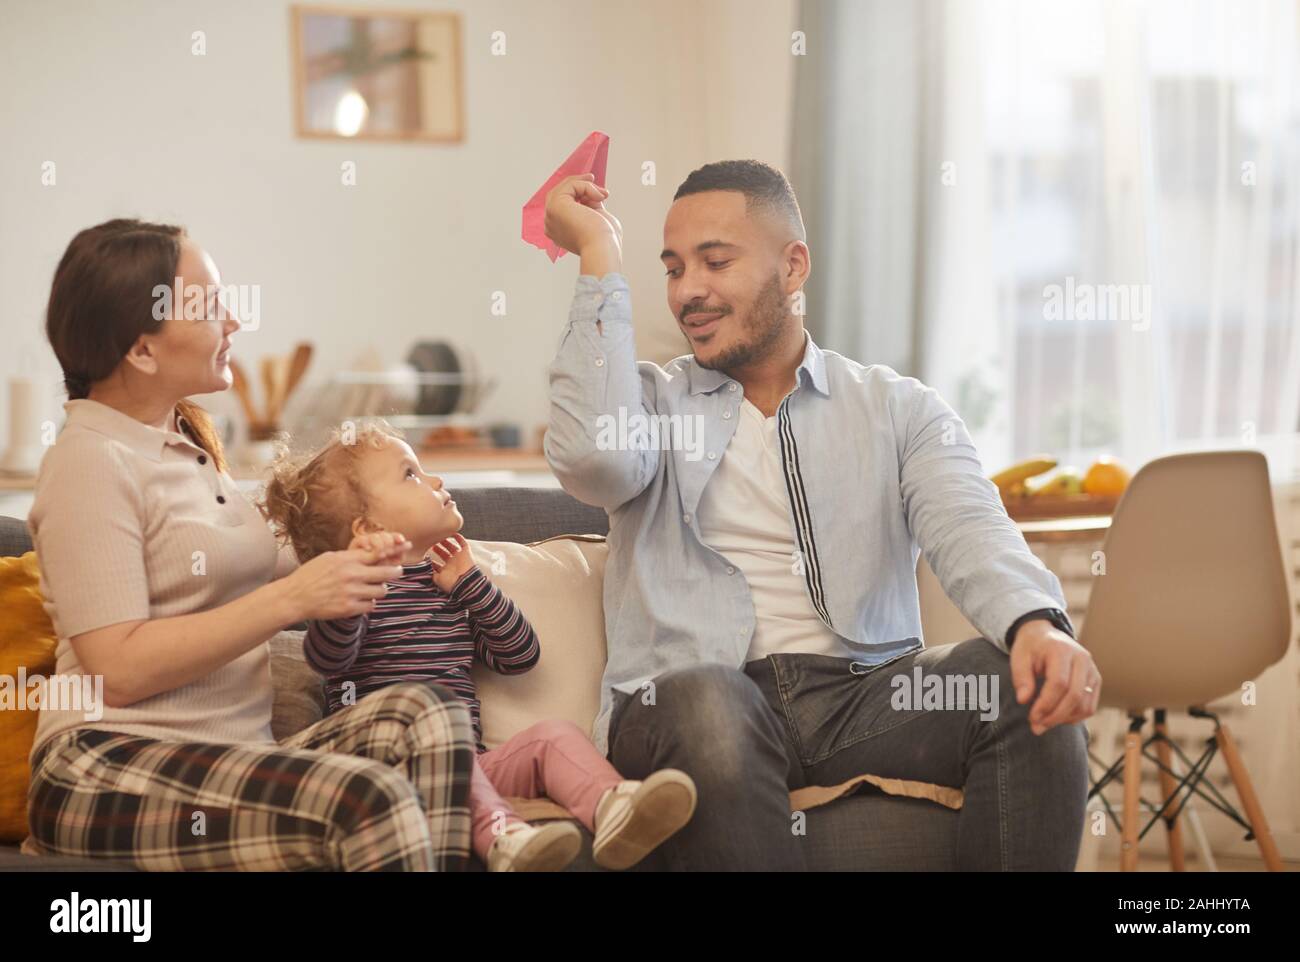 Dai toni caldi ritratto di felice famiglia moderna giocando con graziosi bambina in casa accogliente interno, spazio di copia Foto Stock